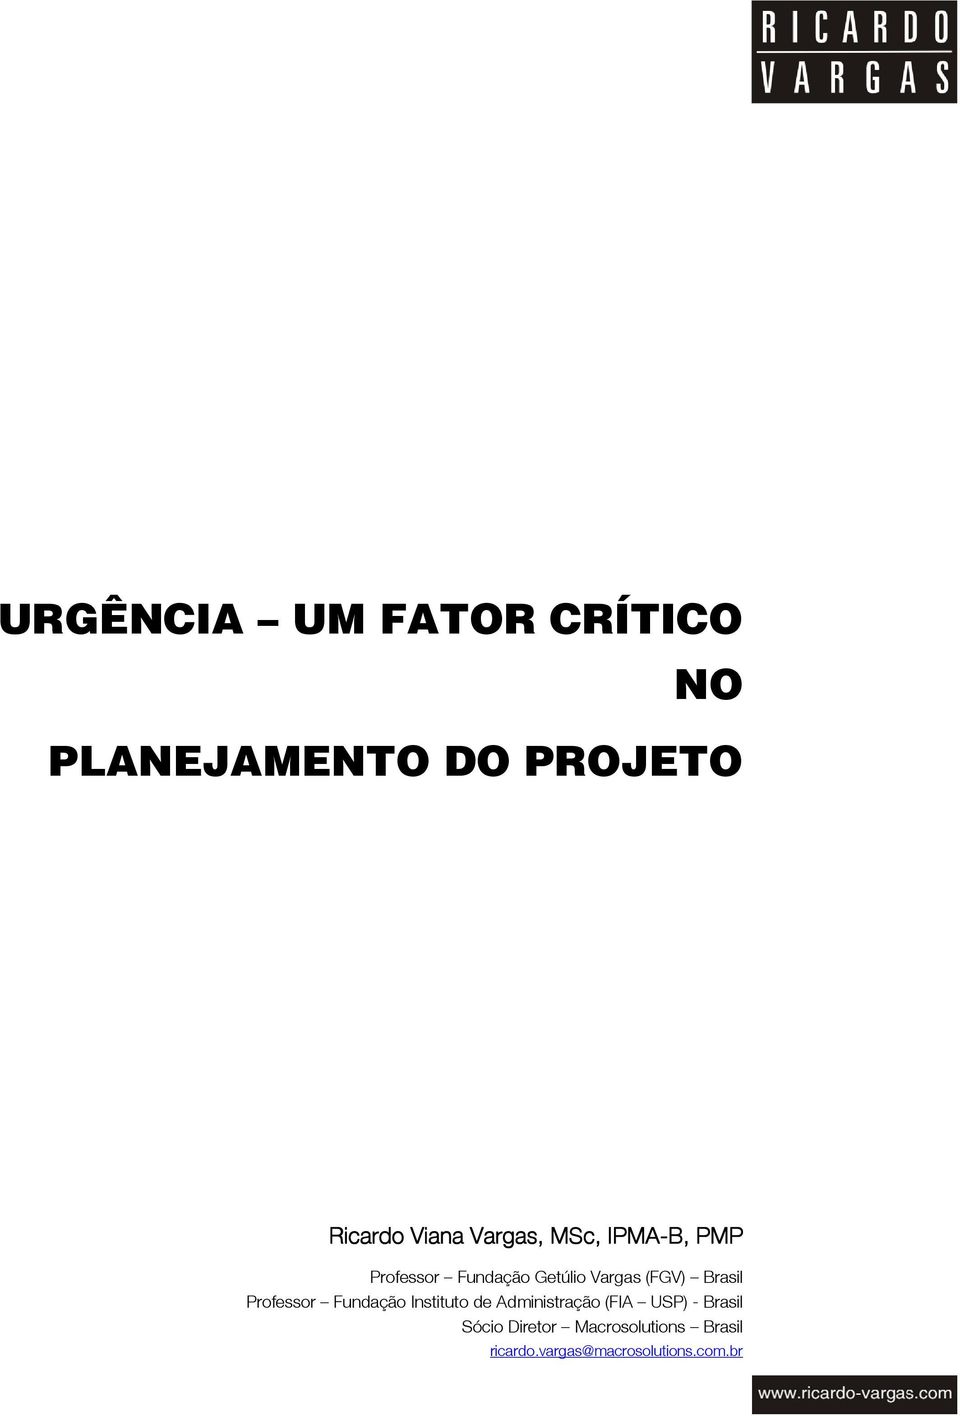 Brasil Professor Fundação Instituto de Administração (FIA USP) -